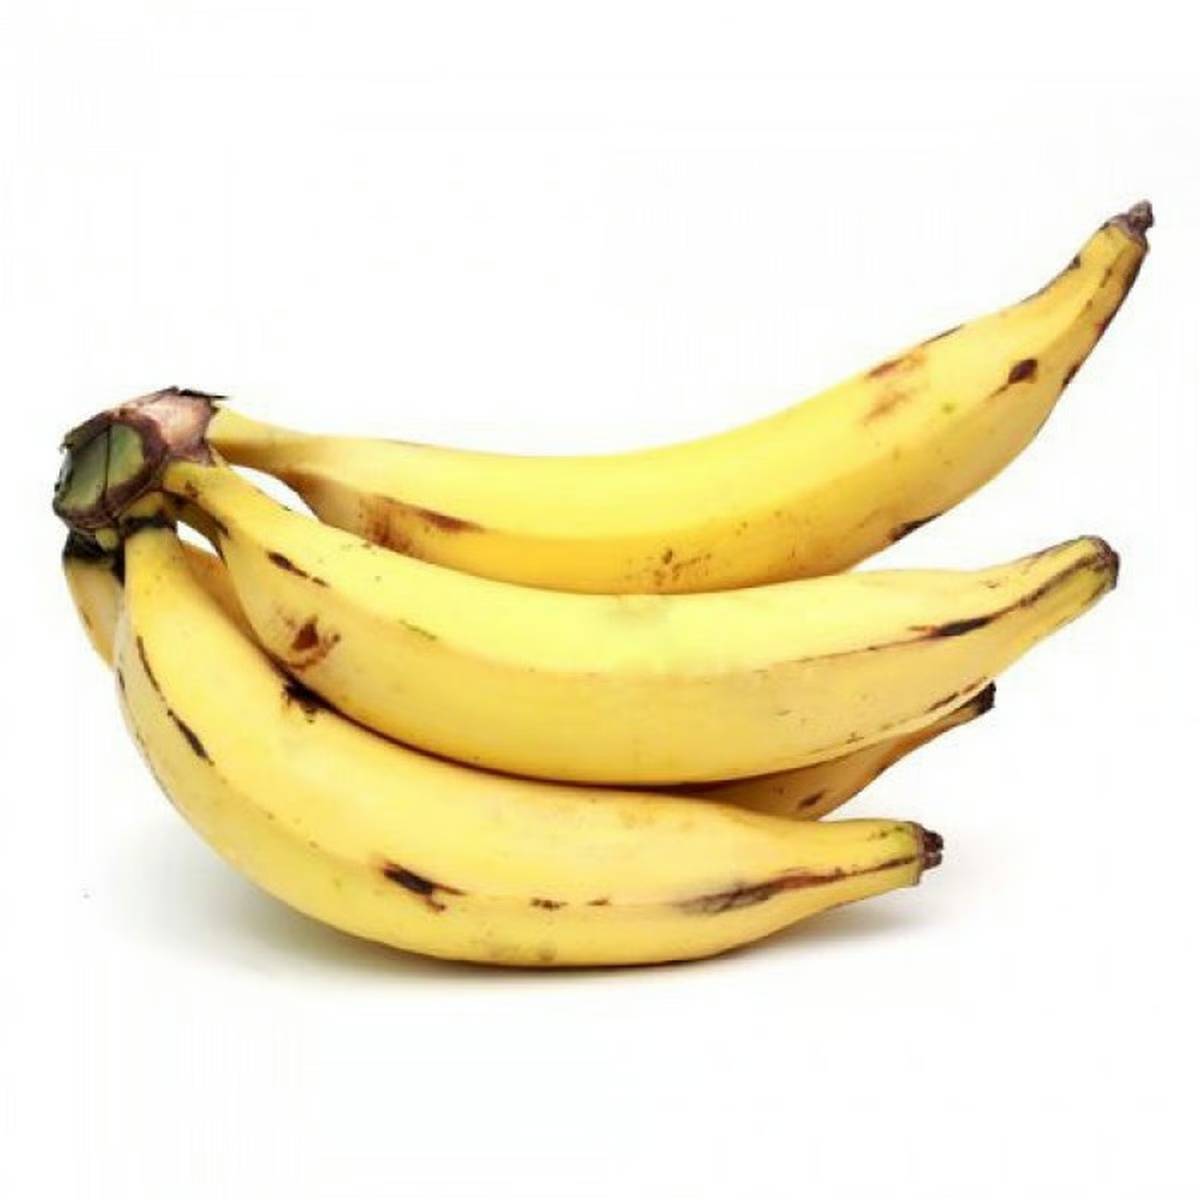 Buy Banana Yellow Big 1 kg Online at Best Price | Bananas | Lulu KSA in Saudi Arabia